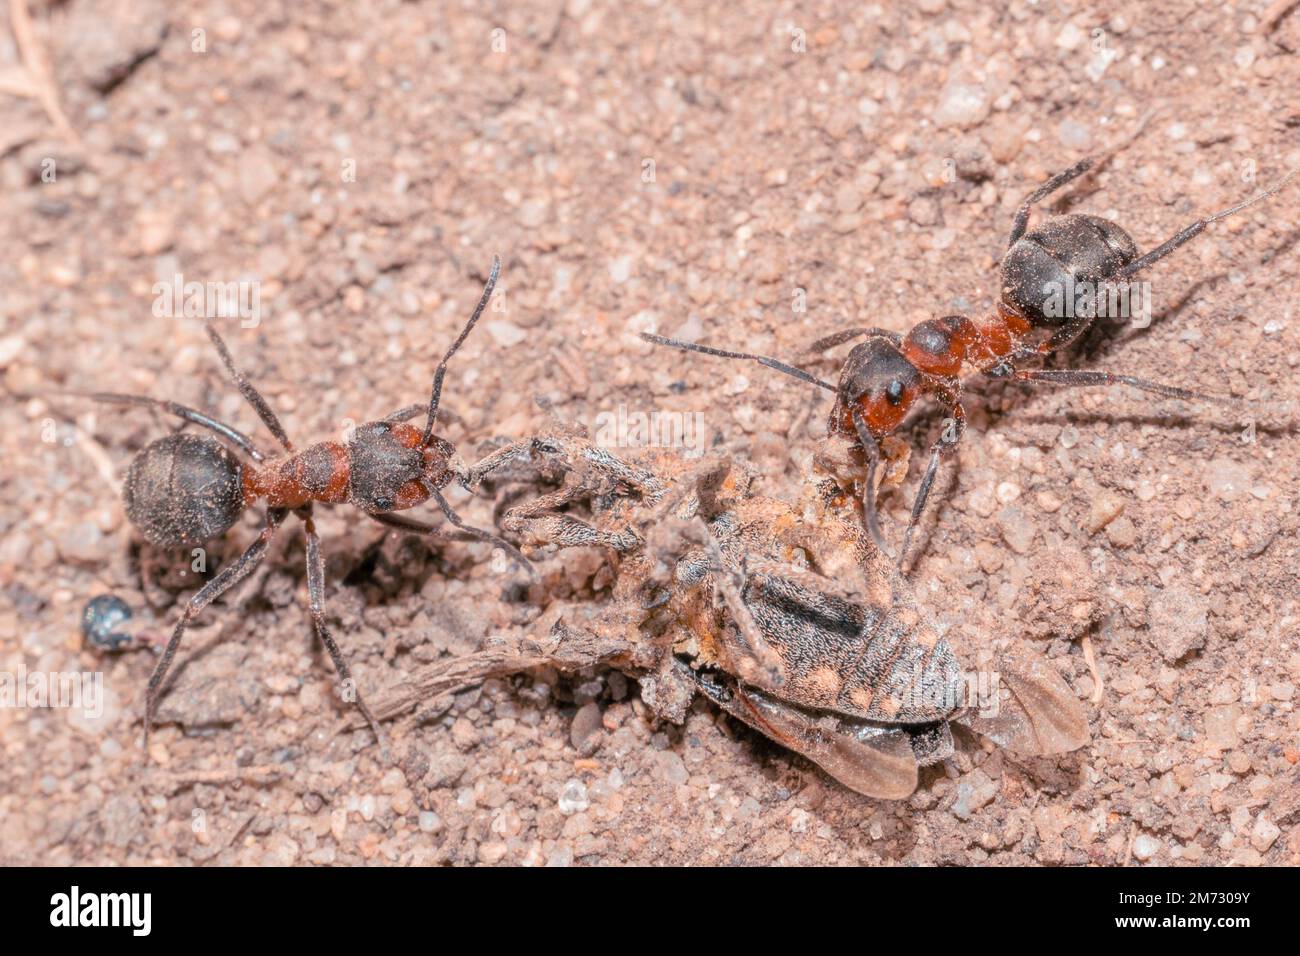 Deux fourmis de bois rouge Formica rufa portent leur proie d'insecte sur le sol sableux Banque D'Images